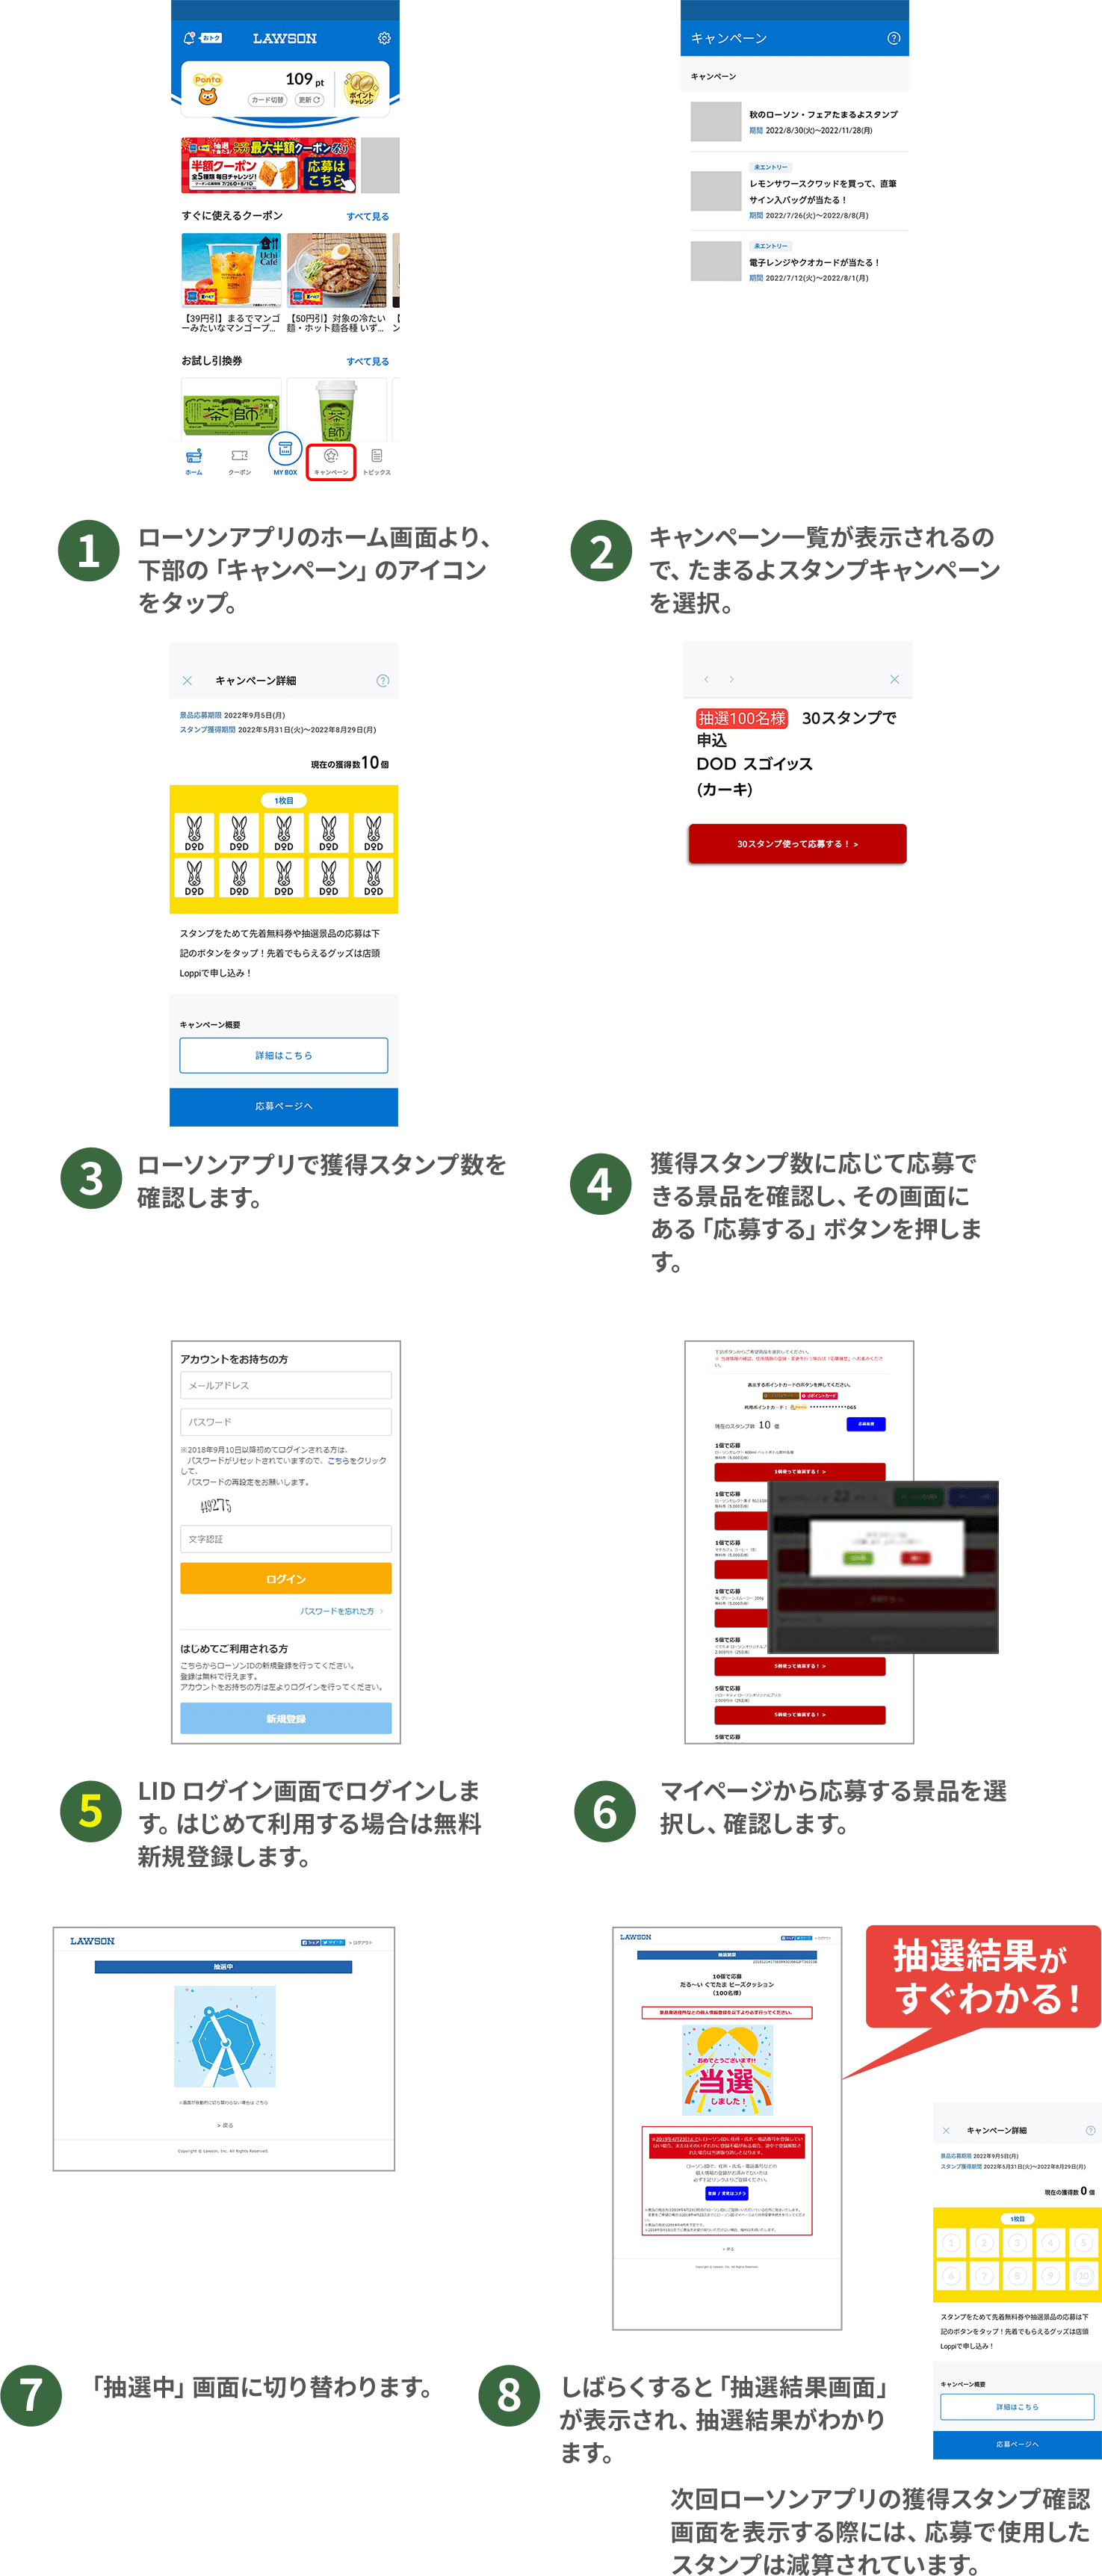 （1）ローソンアプリのホーム画面より、下部の「キャンペーン」のアイコンをタップ。（2）キャンペーン一覧が表示されるので、たまるよスタンプキャンペーンを選択。（3）ローソンアプリで獲得スタンプ数を確認します。（4）獲得スタンプ数に応じて応募できる景品を確認し、その画面にある「応募する」ボタンを押します。（5）LID ログイン画面でログインします。はじめて利用する場合は無料新規登録します。（6）マイページから応募する景品を選択し、確認します。（7）「抽選中」画面に切り替わります。（8）しばらくすると「抽選結果画面」が表示され、抽選結果がわかります。次回ローソンアプリの獲得スタンプ確認画面を表示する際には、応募で使用したスタンプは減算されています。